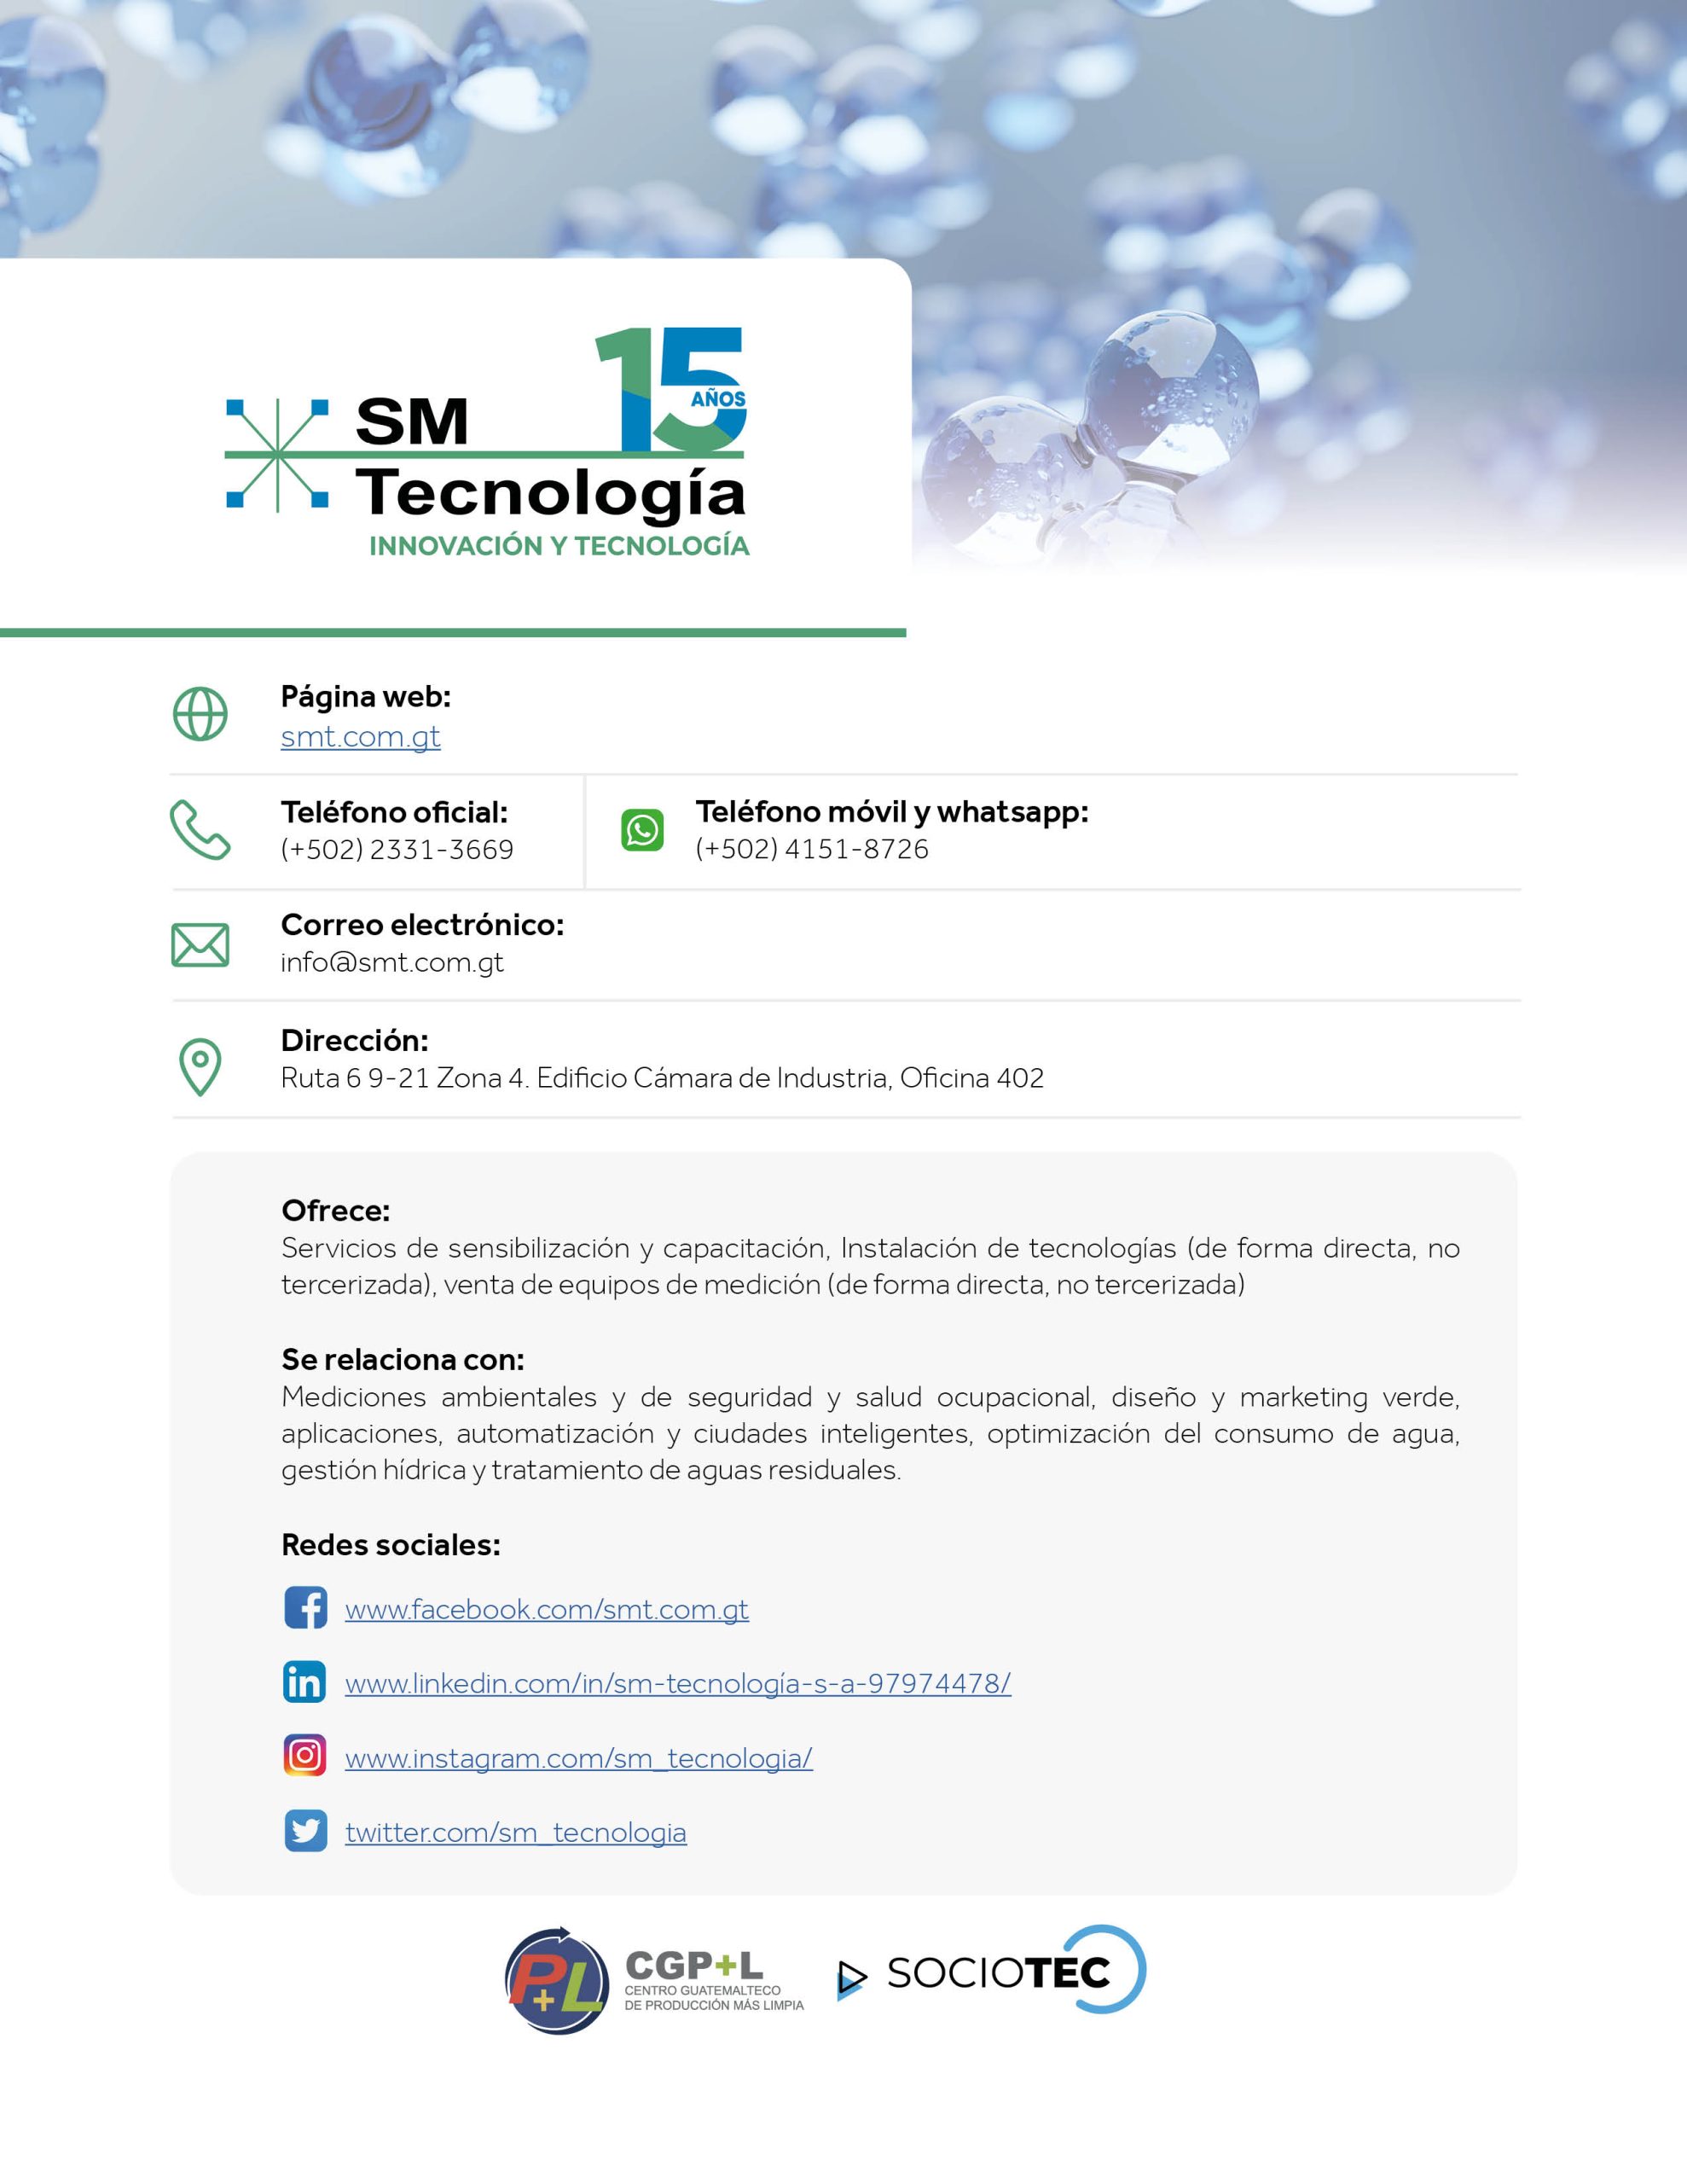 CatálogoSociosTec_SM Tecnología